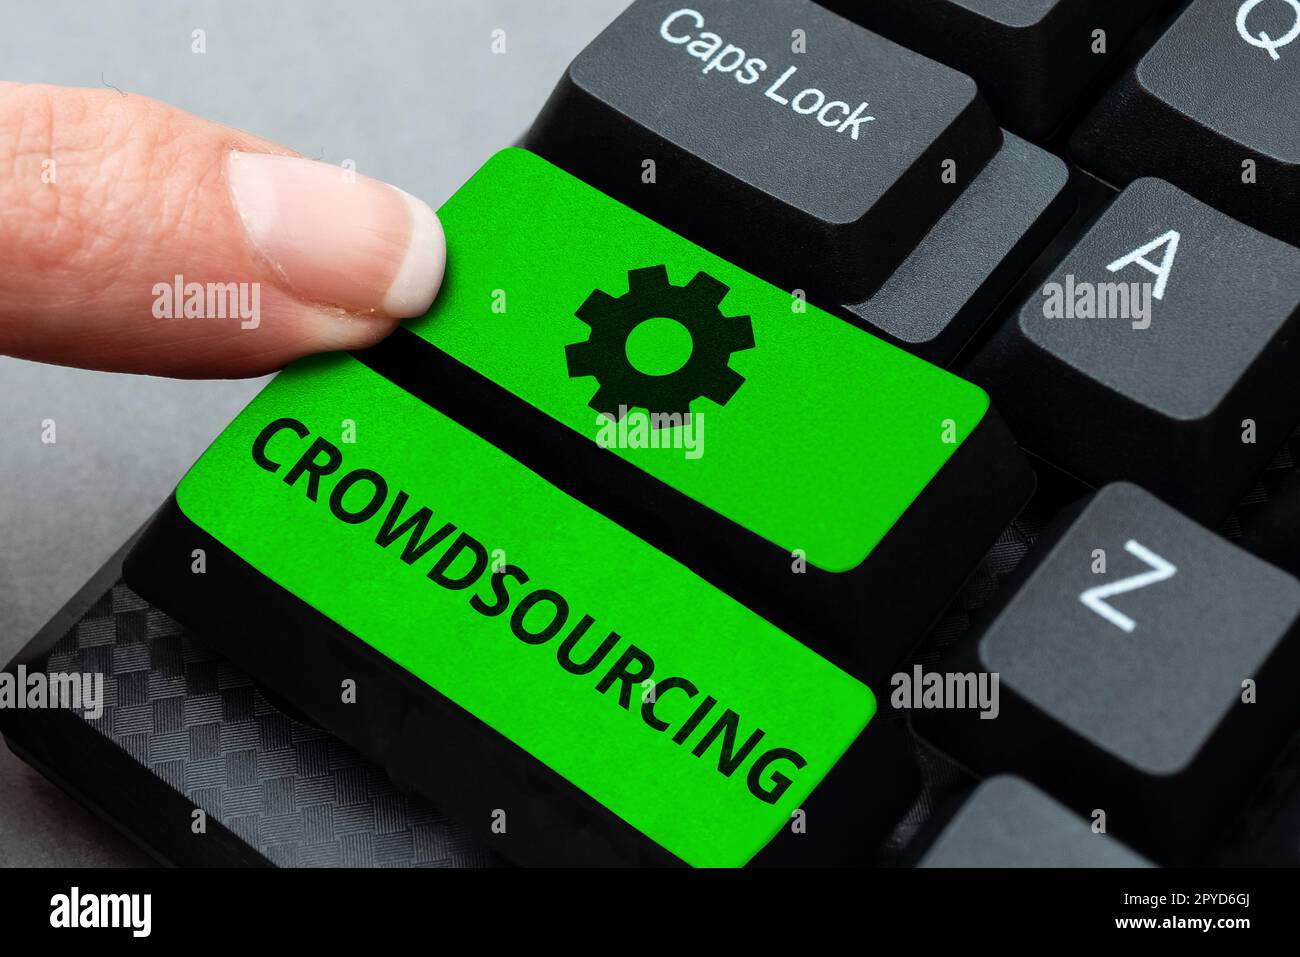 Konzeptionelle Beschriftung Crowdsourcing. Konzeptfoto Gewinnen von Arbeitsinformationen von einer großen Gruppe von Personen Stockfoto